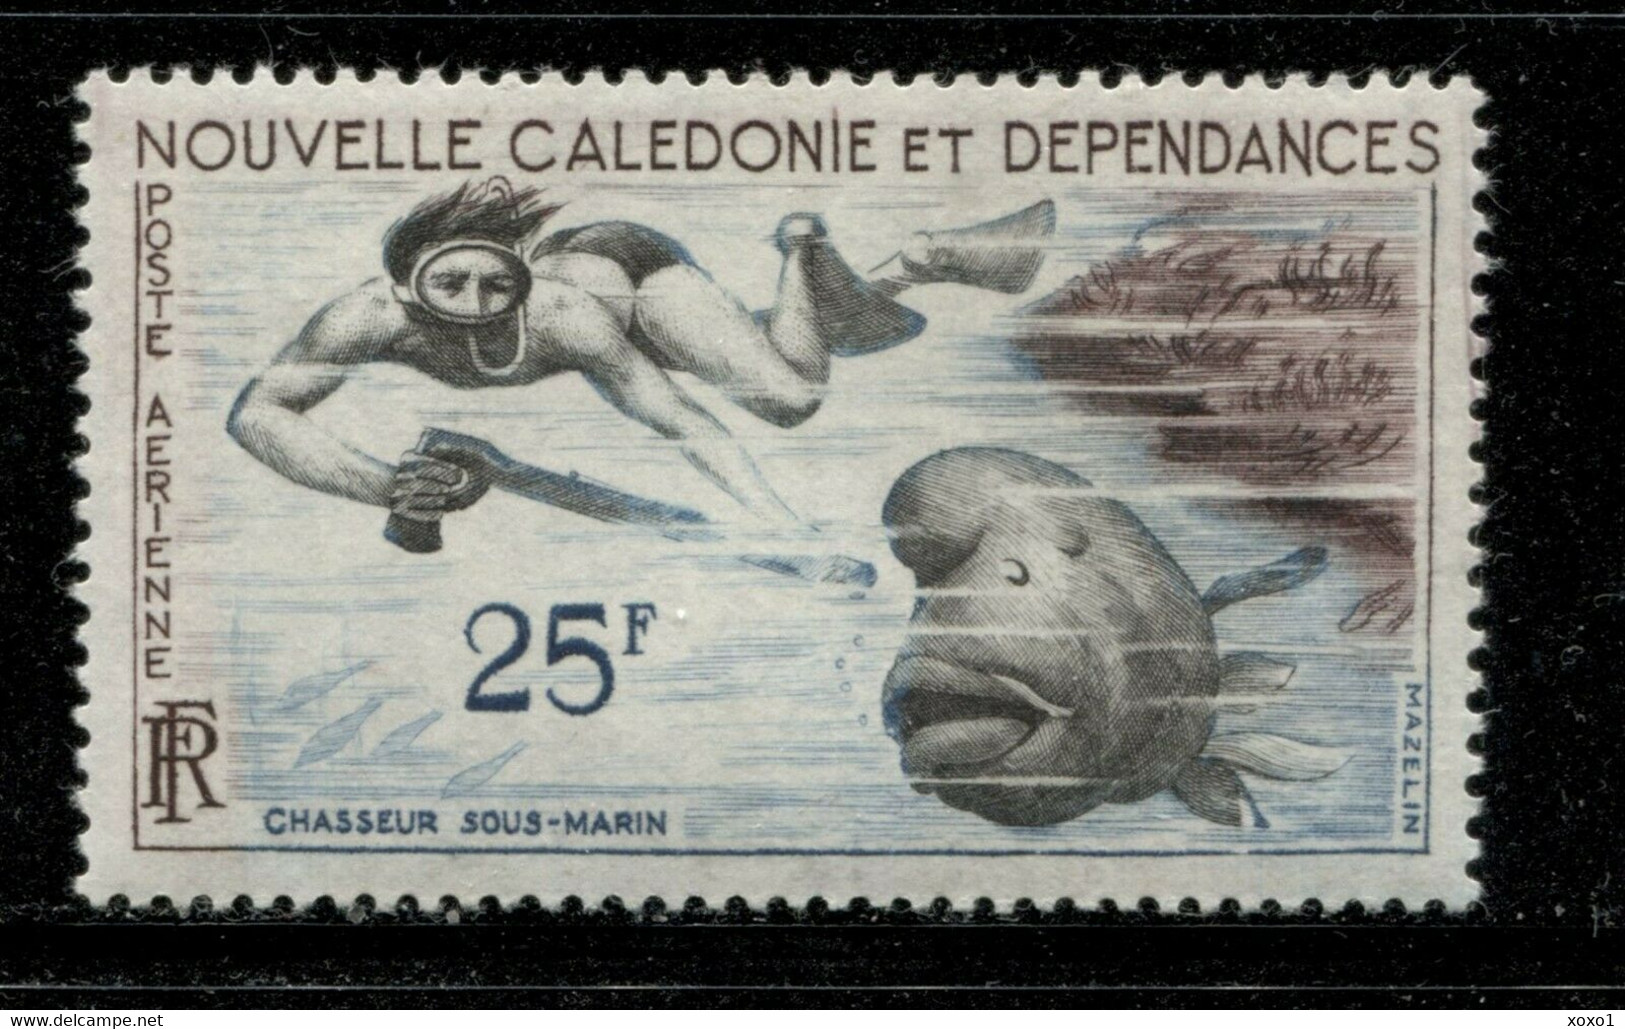 New Caledonia 1962 MiNr. 381 Neukaledonien Scuba Diver Fish 1v  MNH** 7,00 € - Tauchen